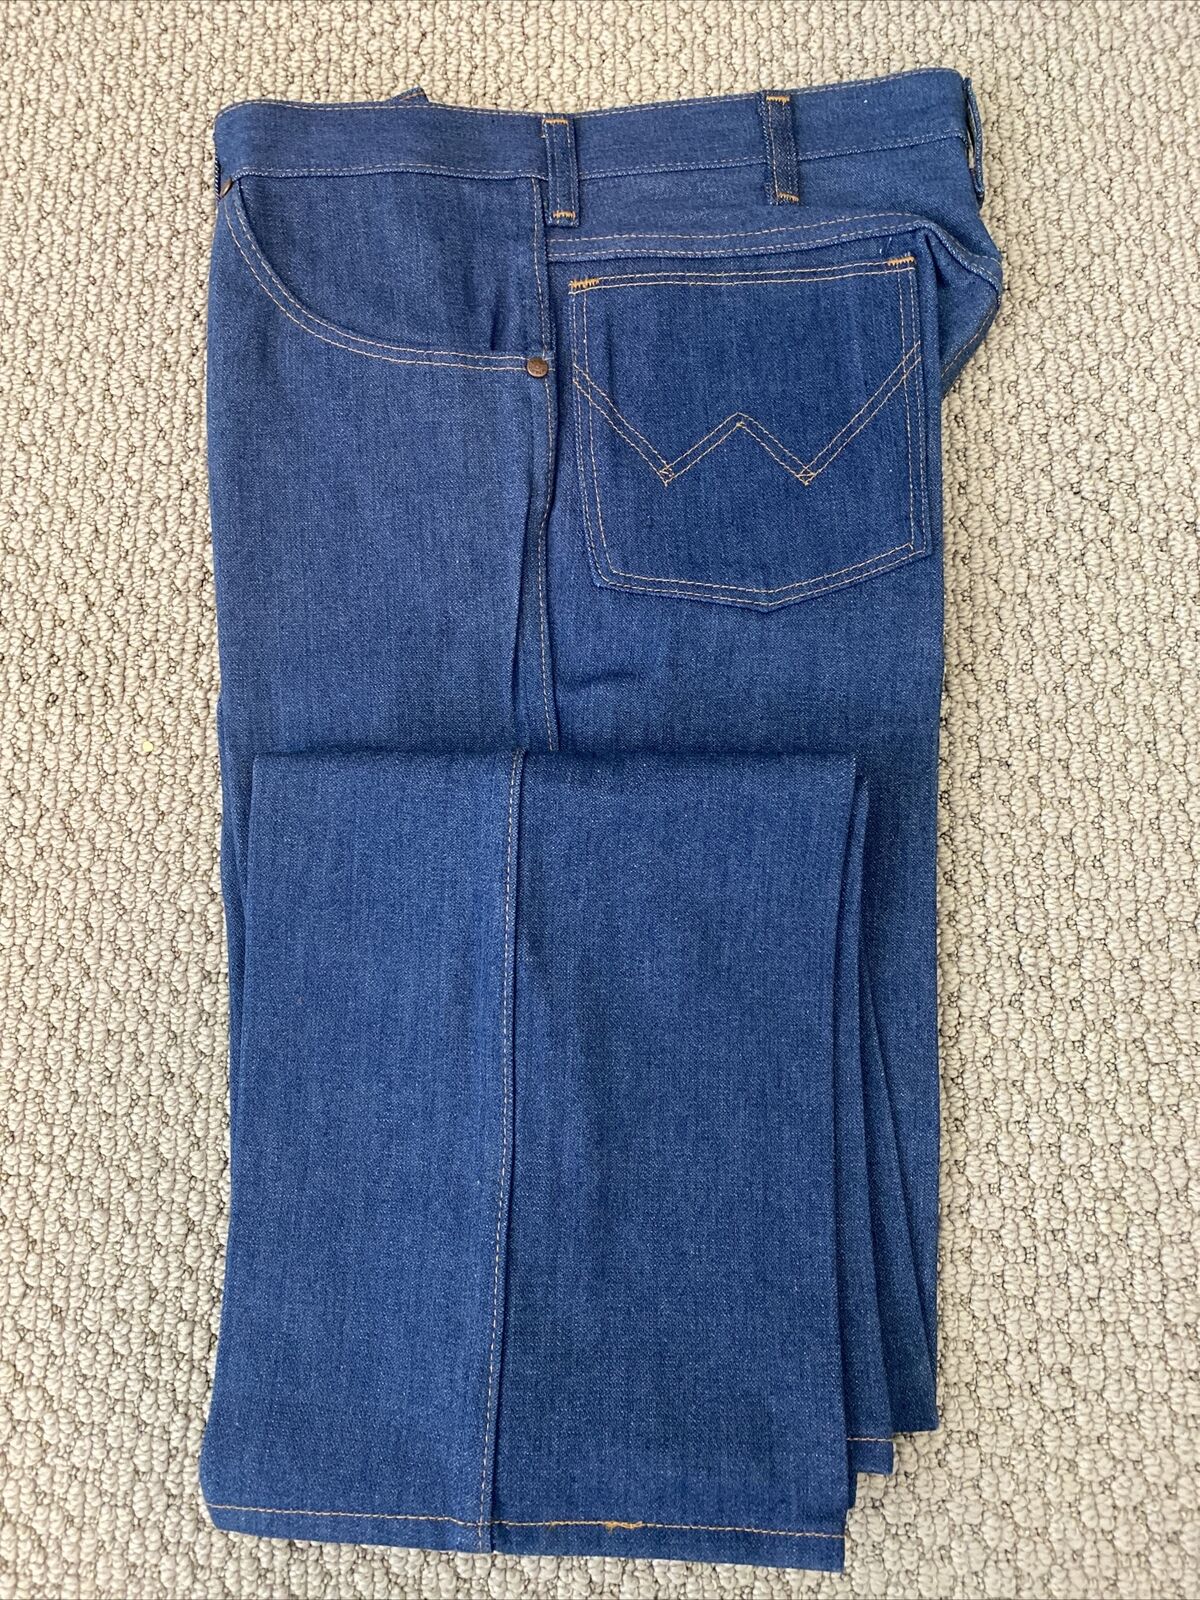 VTG 70s Wrangler 14oz Super Denim Jeans Navy Blue 34x34 Straight 